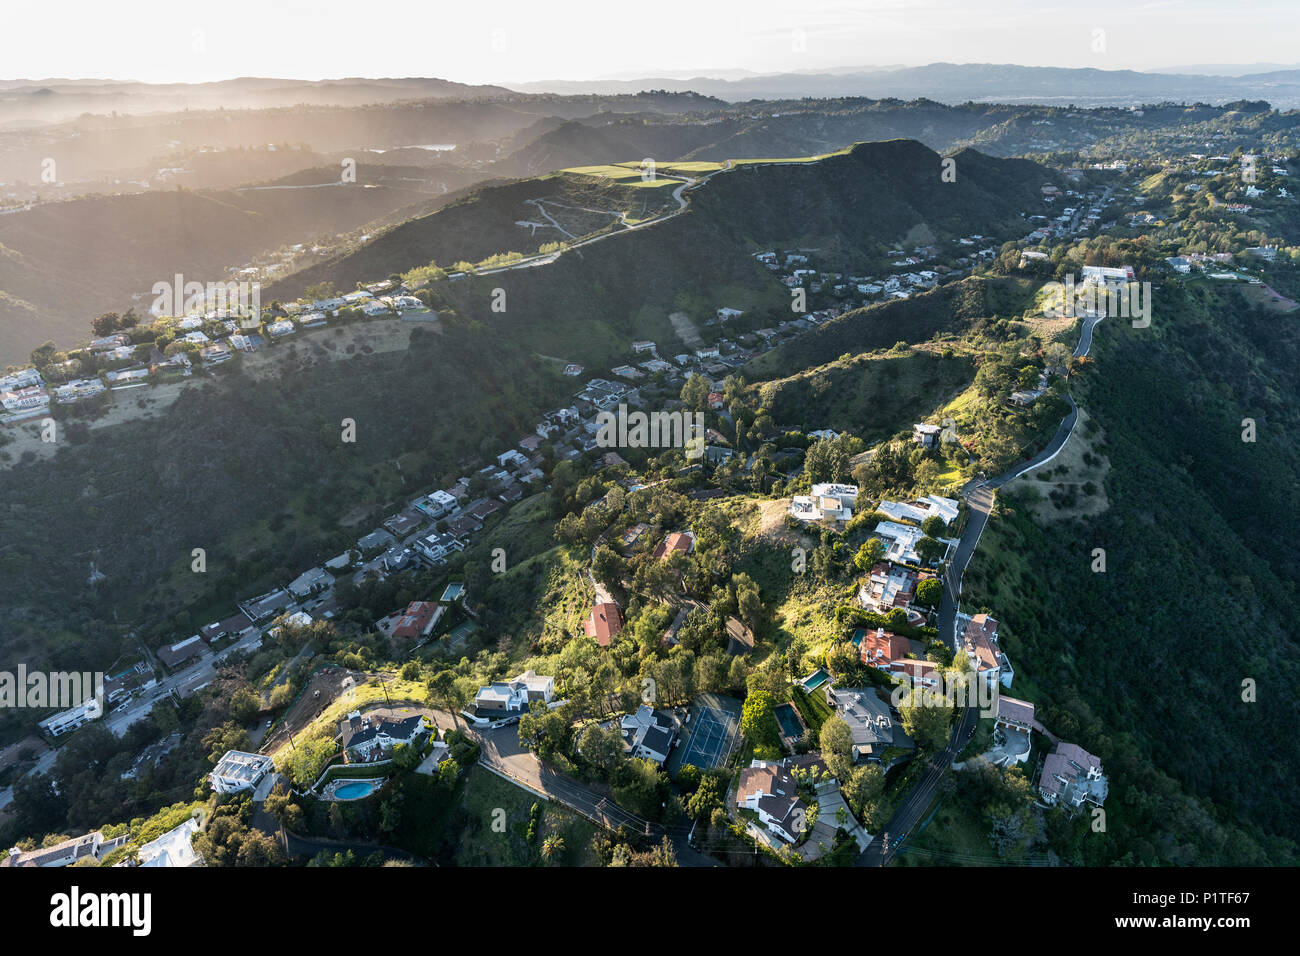 Vista aérea del sur de Beverly Park casas en la colina Santa Monica Mountains encima de Beverly Hills y Los Angeles, California. Foto de stock